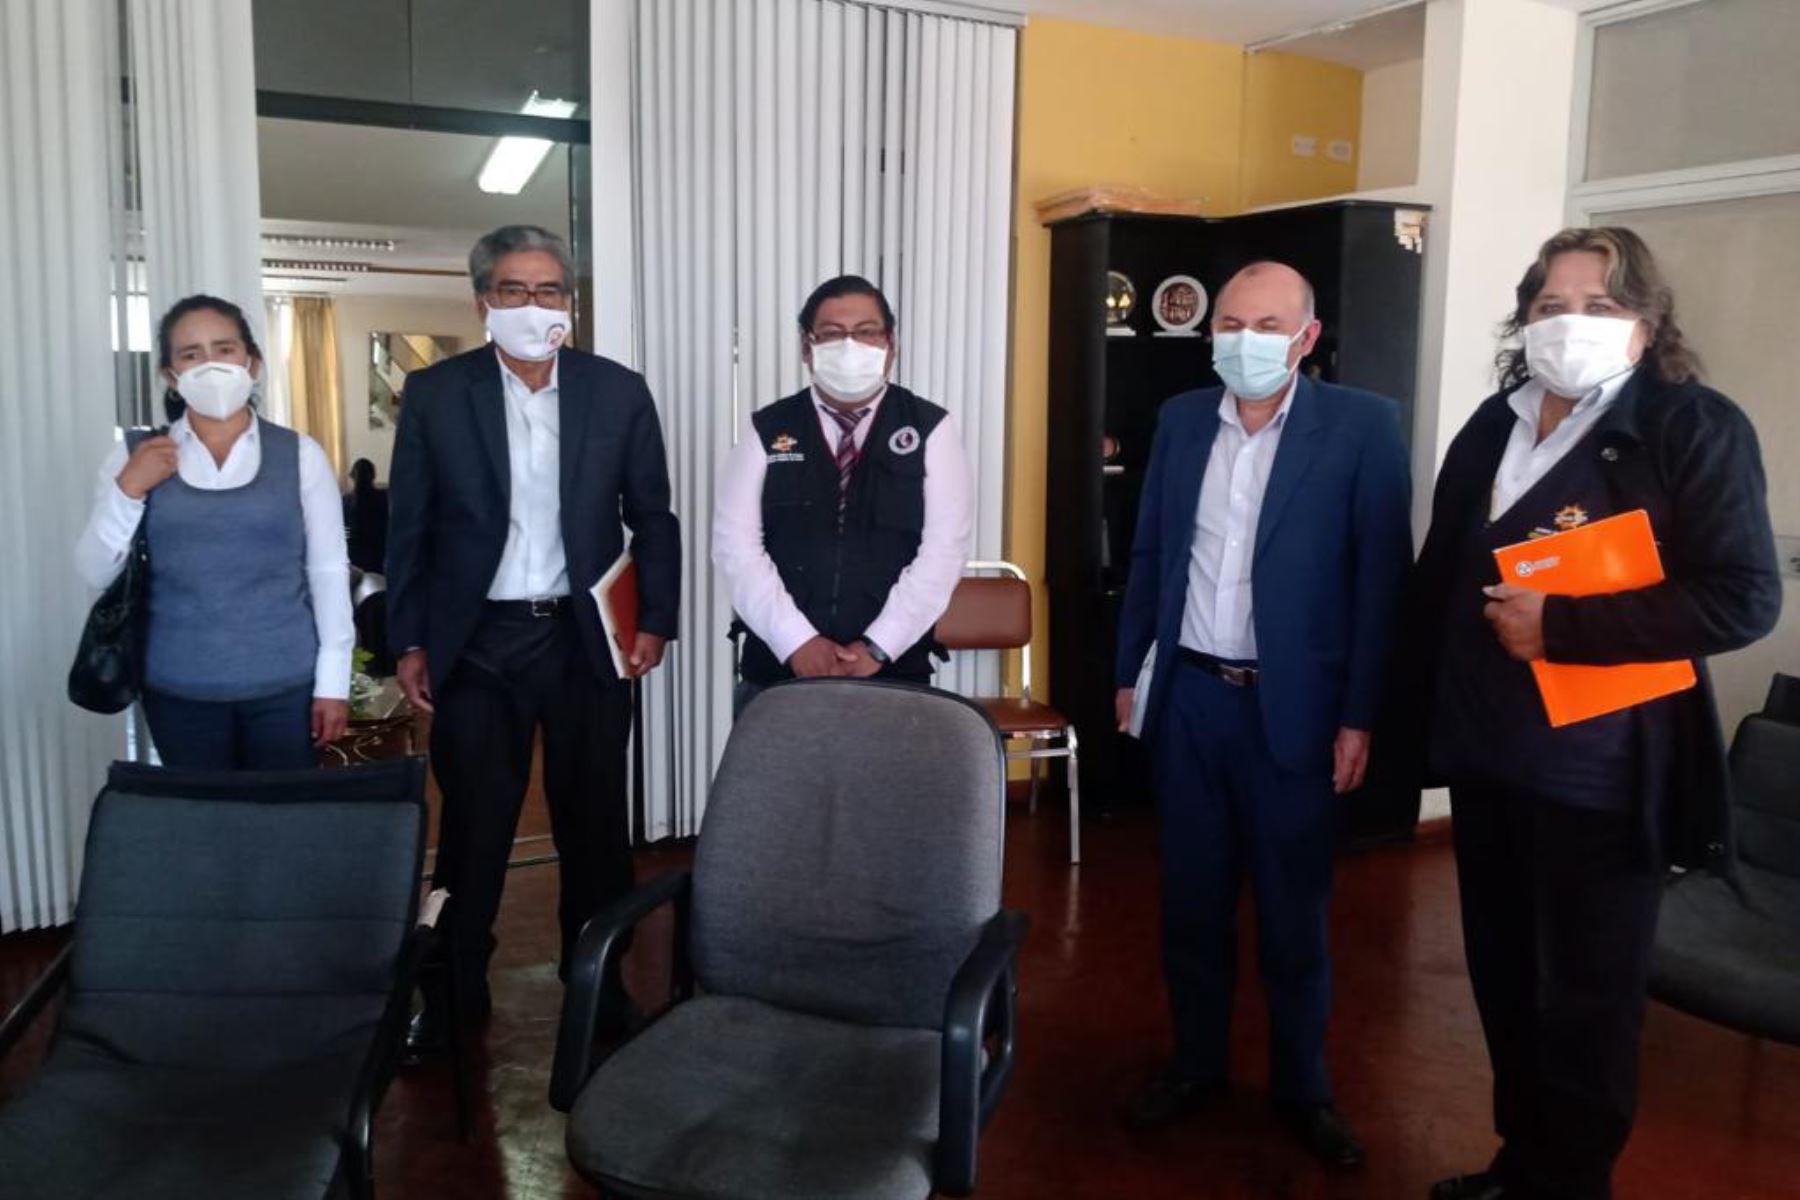 Ante el reporte de casos de covid-19, la alcaldesa de Chachas, Marta Huamaní, se reunió con autoridades de Salud de la ciudad de Arequipa.